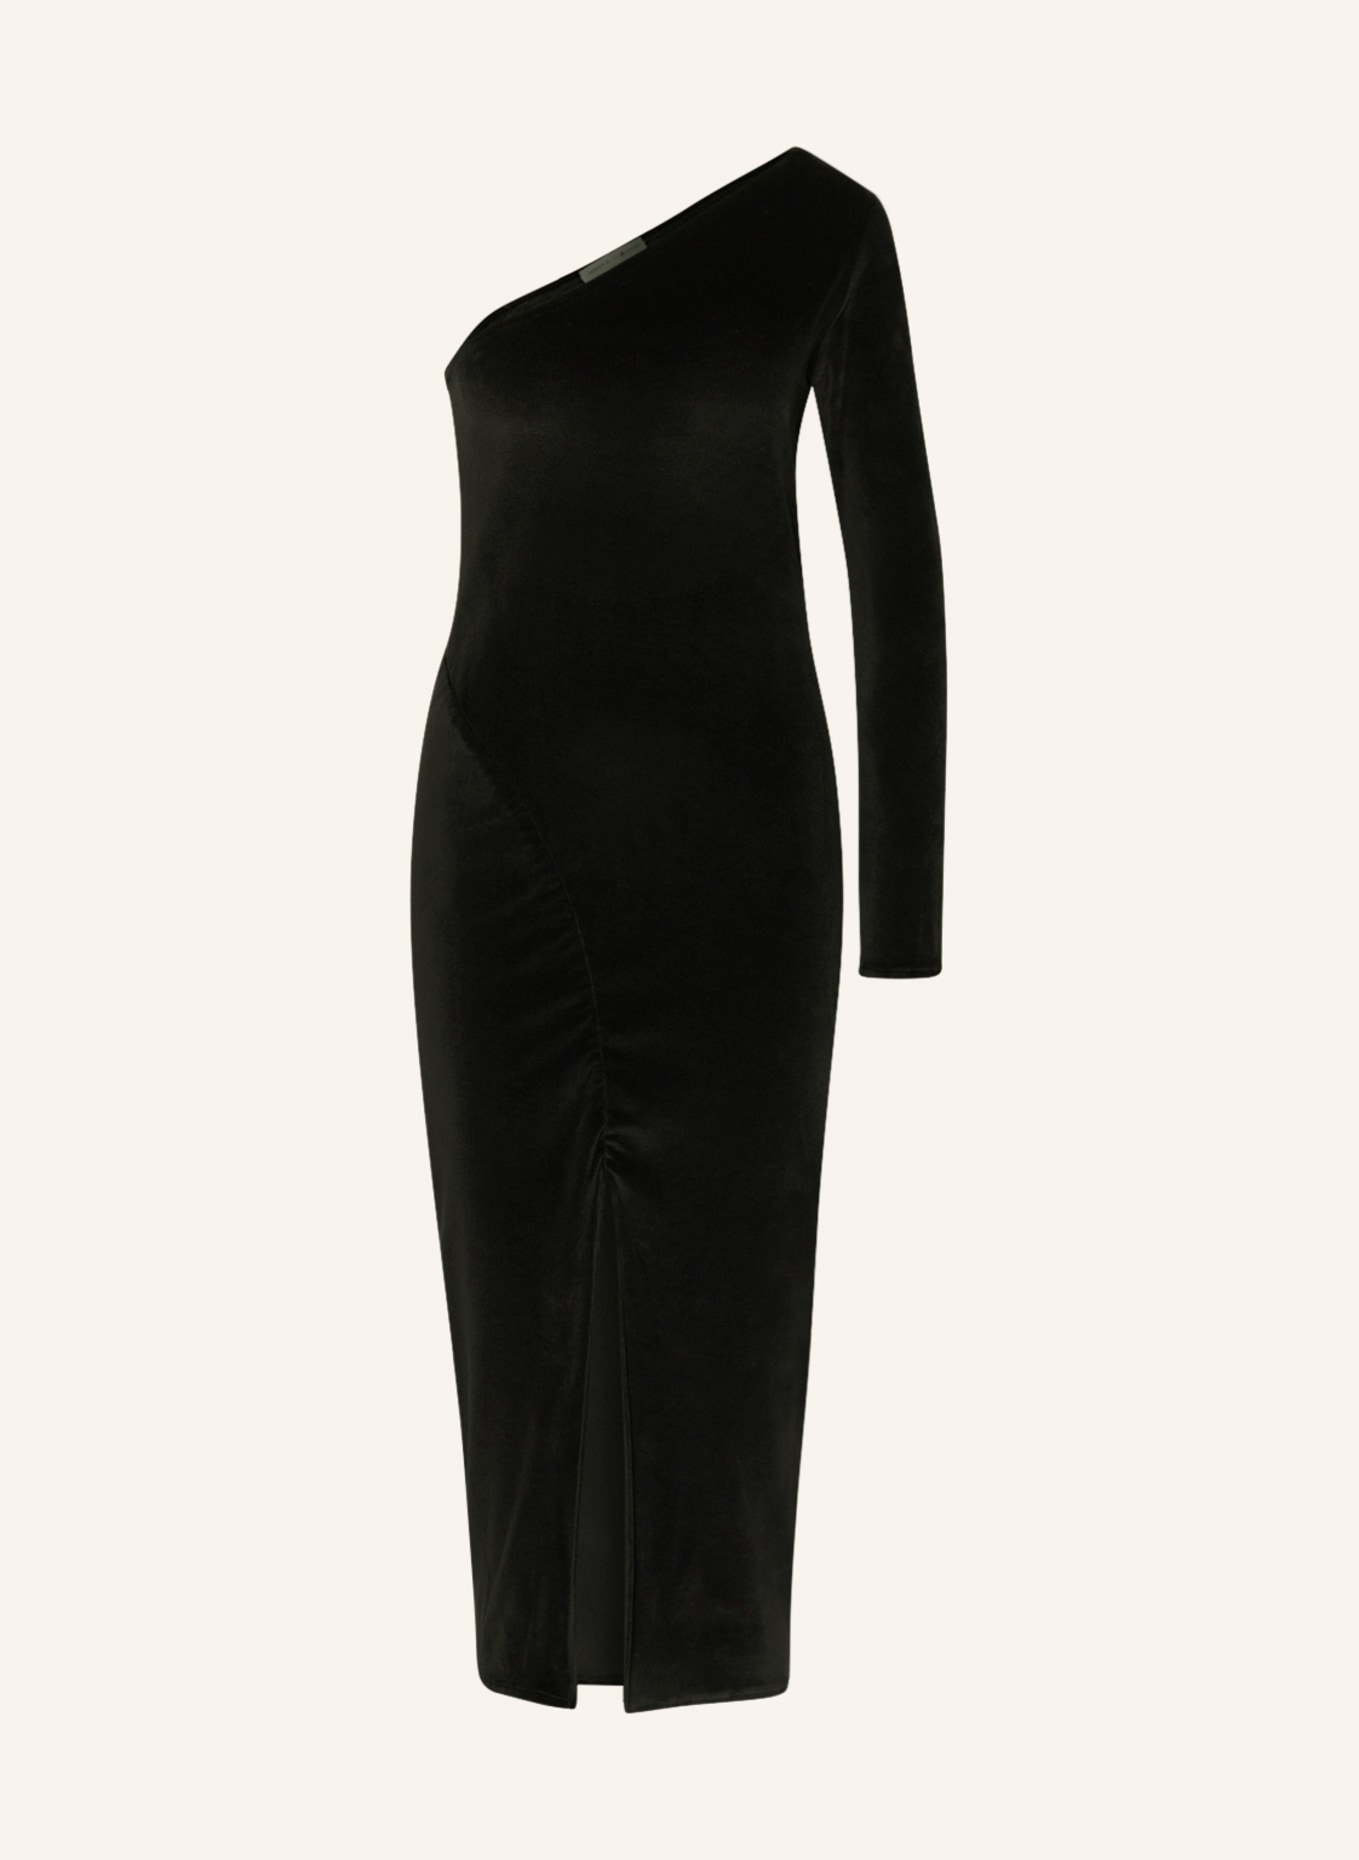 MIRYAM One-shoulder dress made of velvet, Color: BLACK (Image 1)